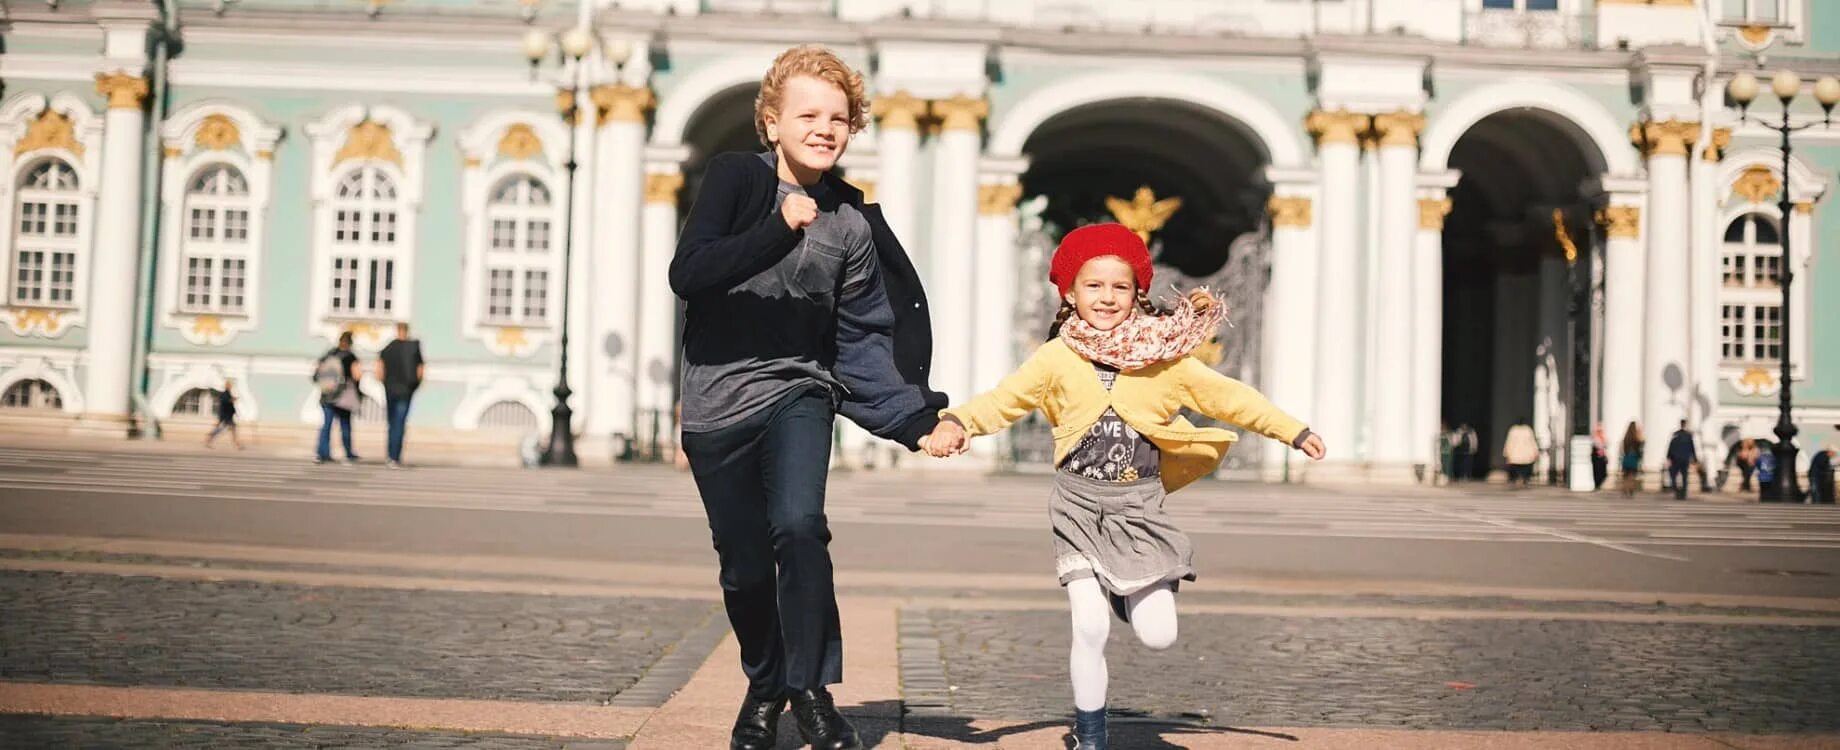 Экскурсии на каникулах. Каникулы в Питере. Питер для детей. Экскурсии для детей в Санкт-Петербурге. Питер дети экскурсия.